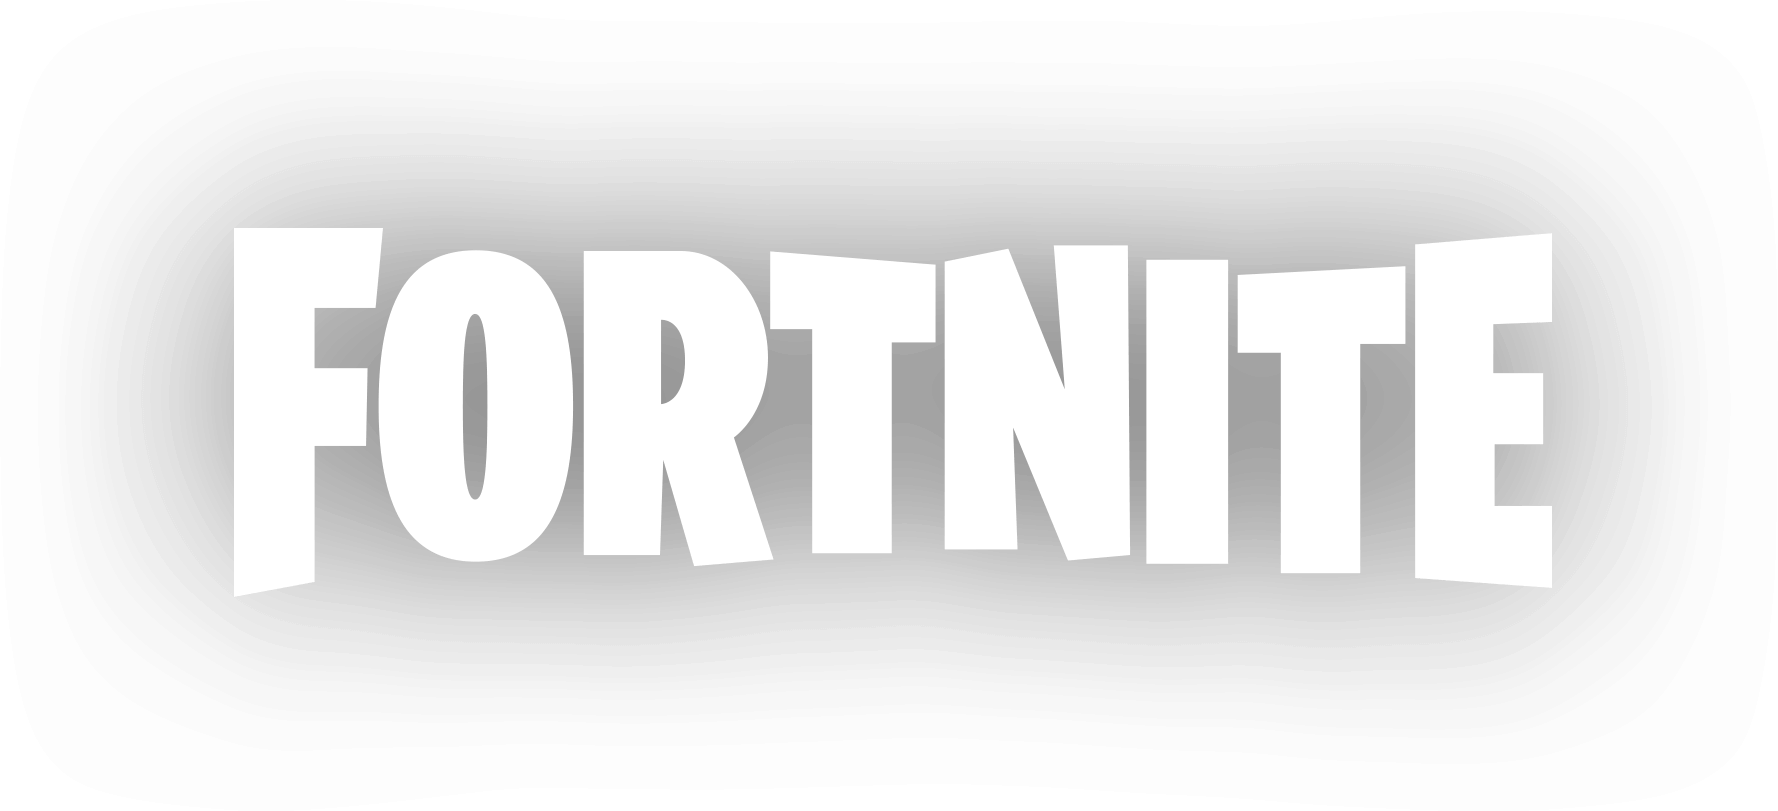 「Fortnite」ロゴ